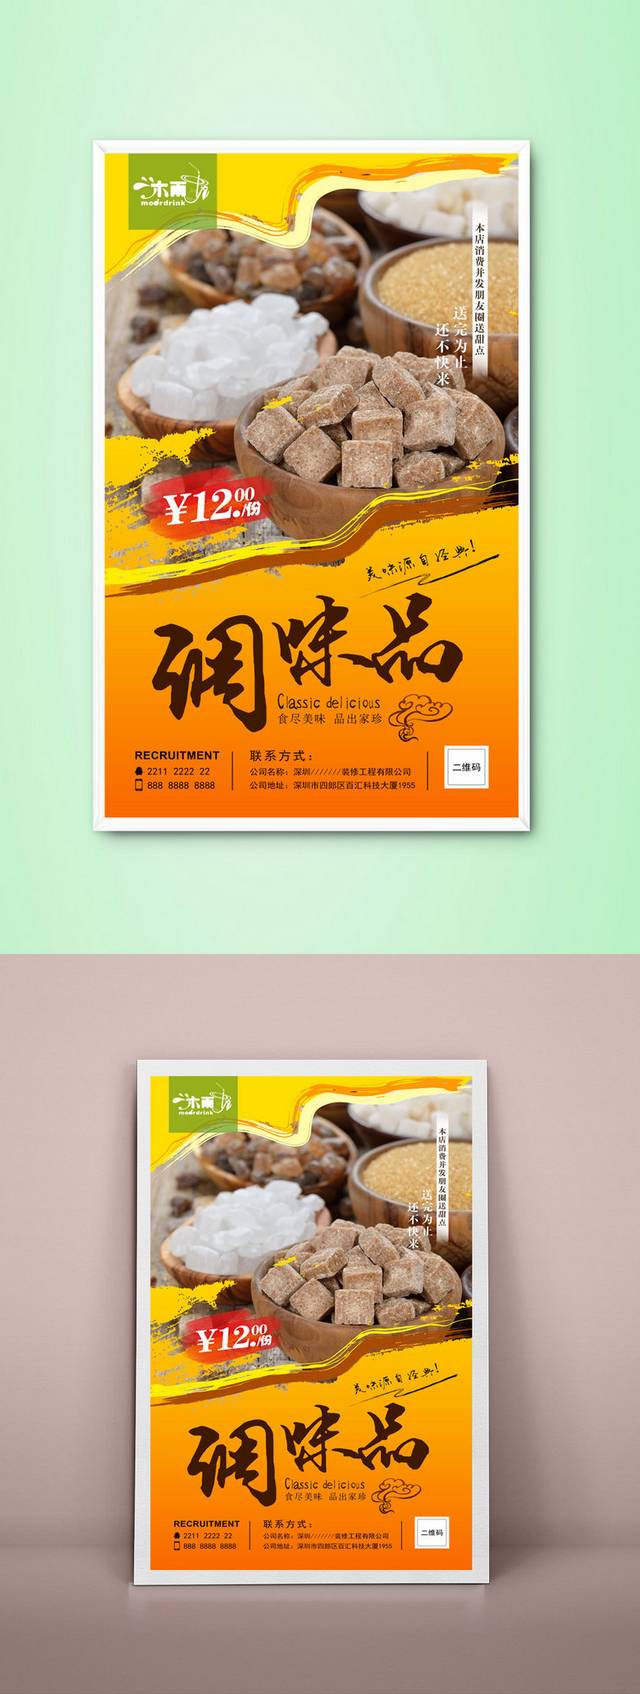 调味品饮食海报设计